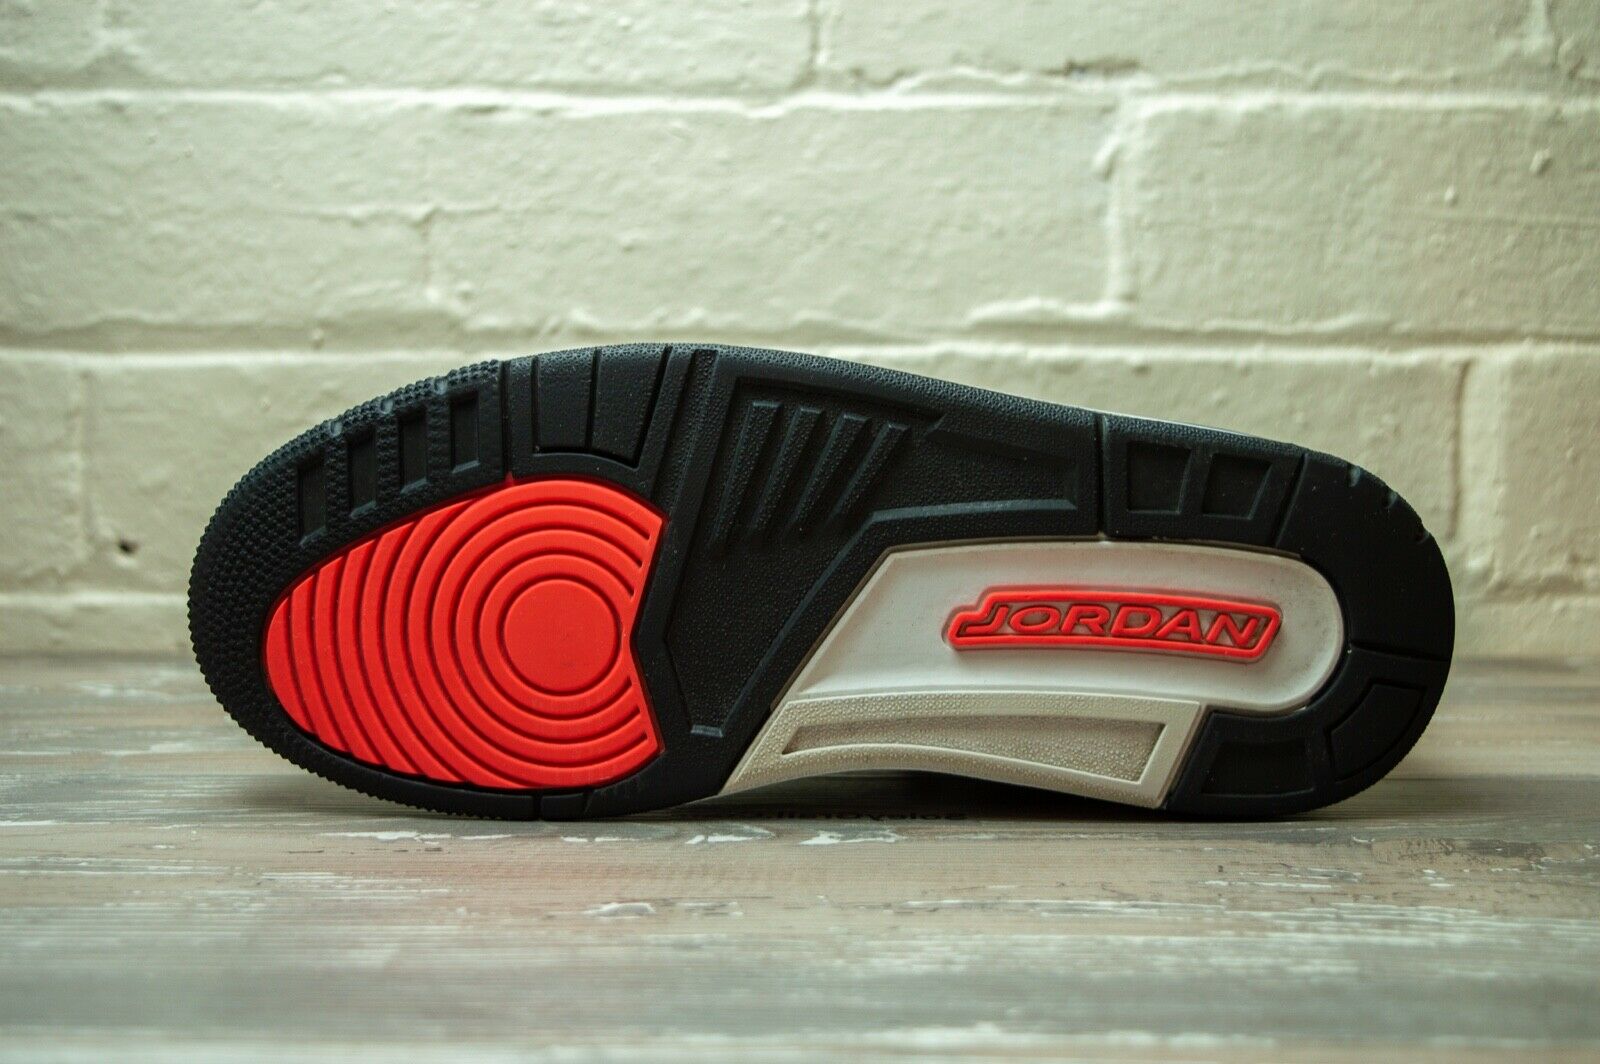 Nike Air Jordan 3 Retro Infrared 23 136064 123 -Nike Air Jordan 3 Retro Infrared 23 136064 123 -